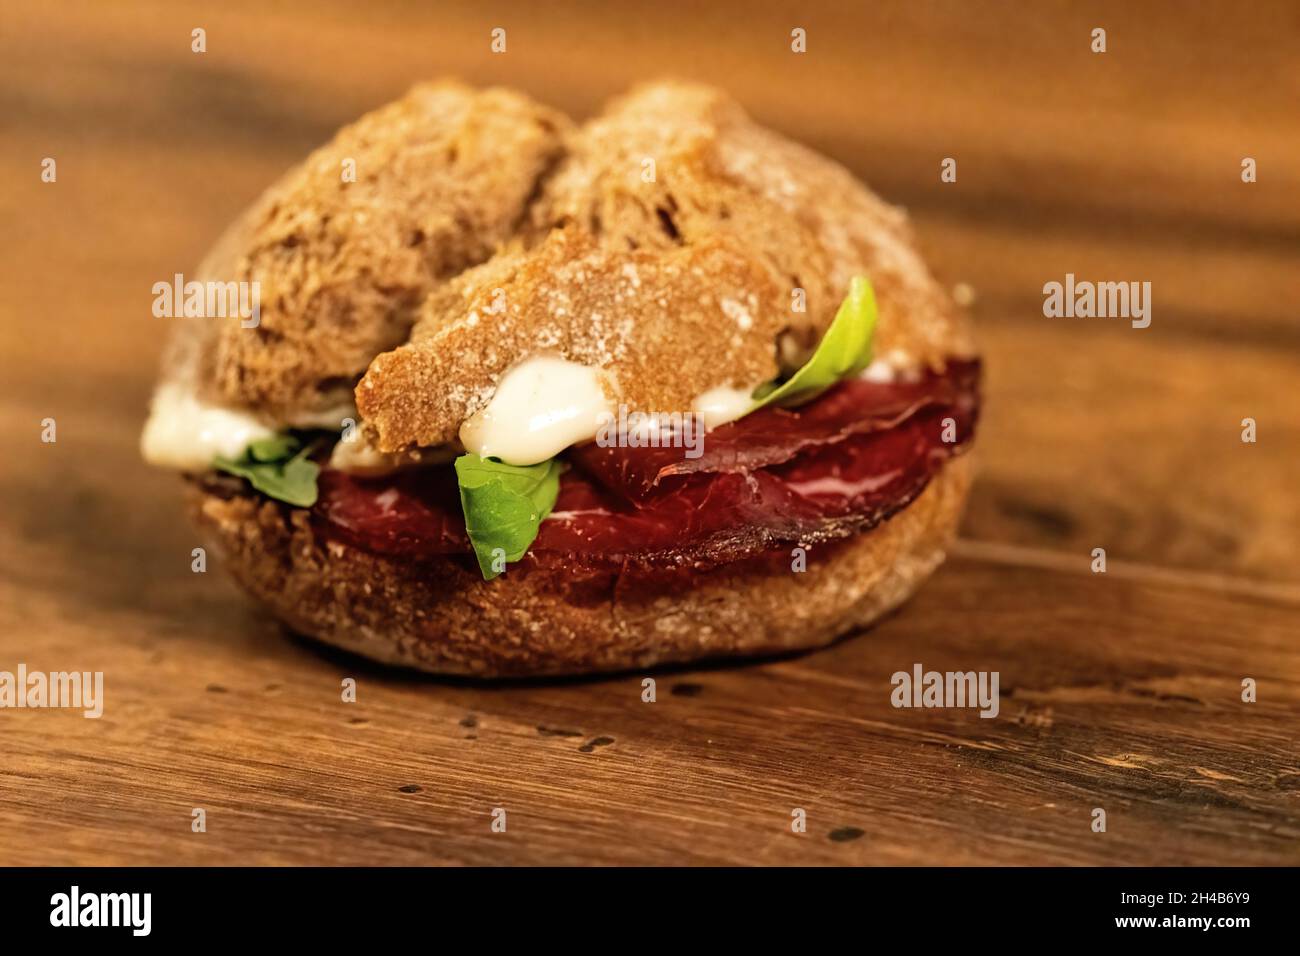 sandwich avec salami et légumes sur une surface en bois Banque D'Images